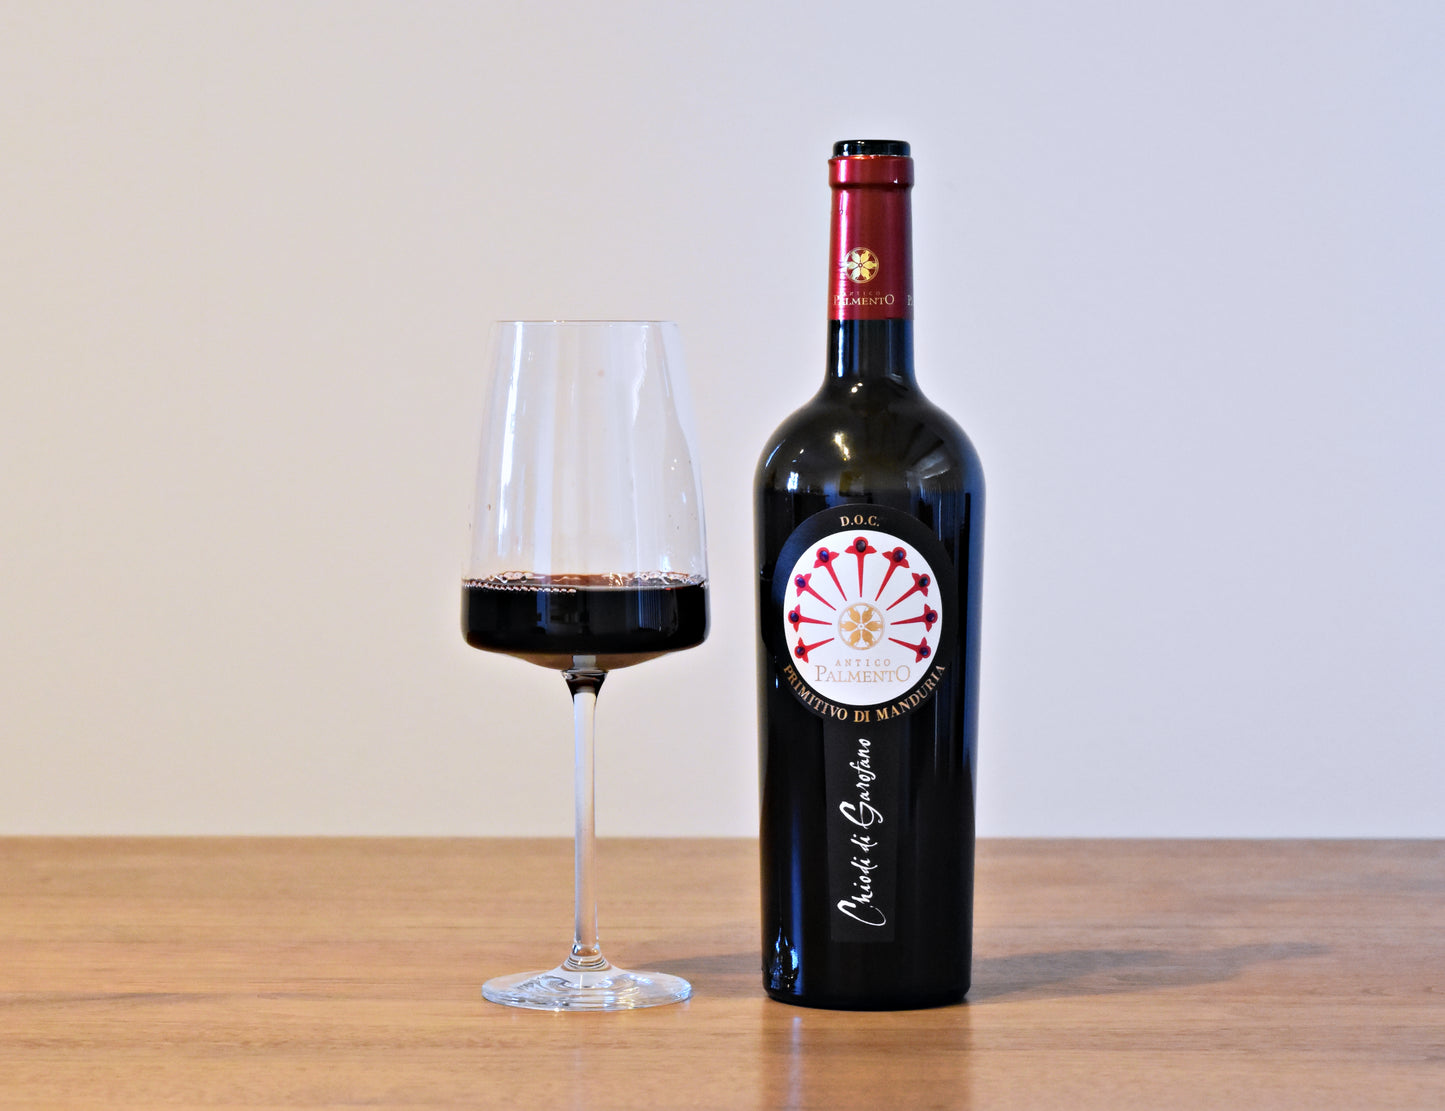 Chiodi di Garofano（キオーディ・ディ・ガロファノ）プリミティーヴォ100％　赤ワイン